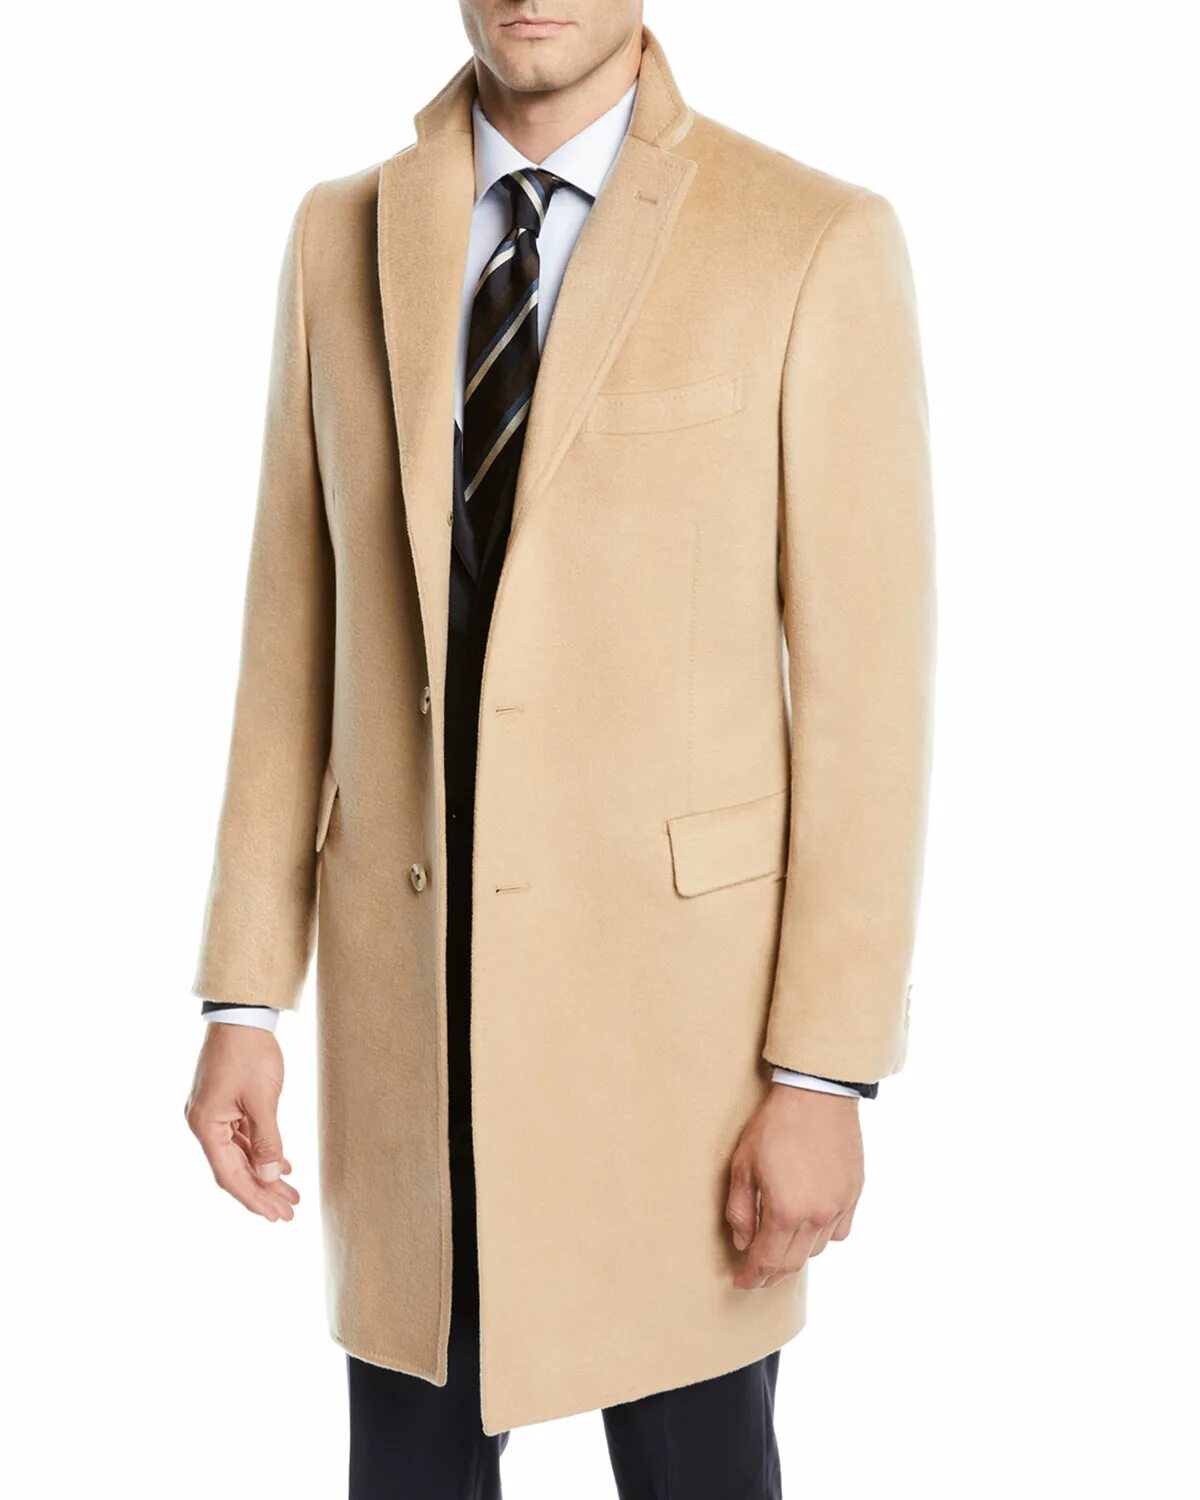 Мужской кашемир. Кашемировое пальто мужское кэмел. Wool and Cashmere пальто мужское. Кашемировое пальто мужское. Кашемир пальто мужское.